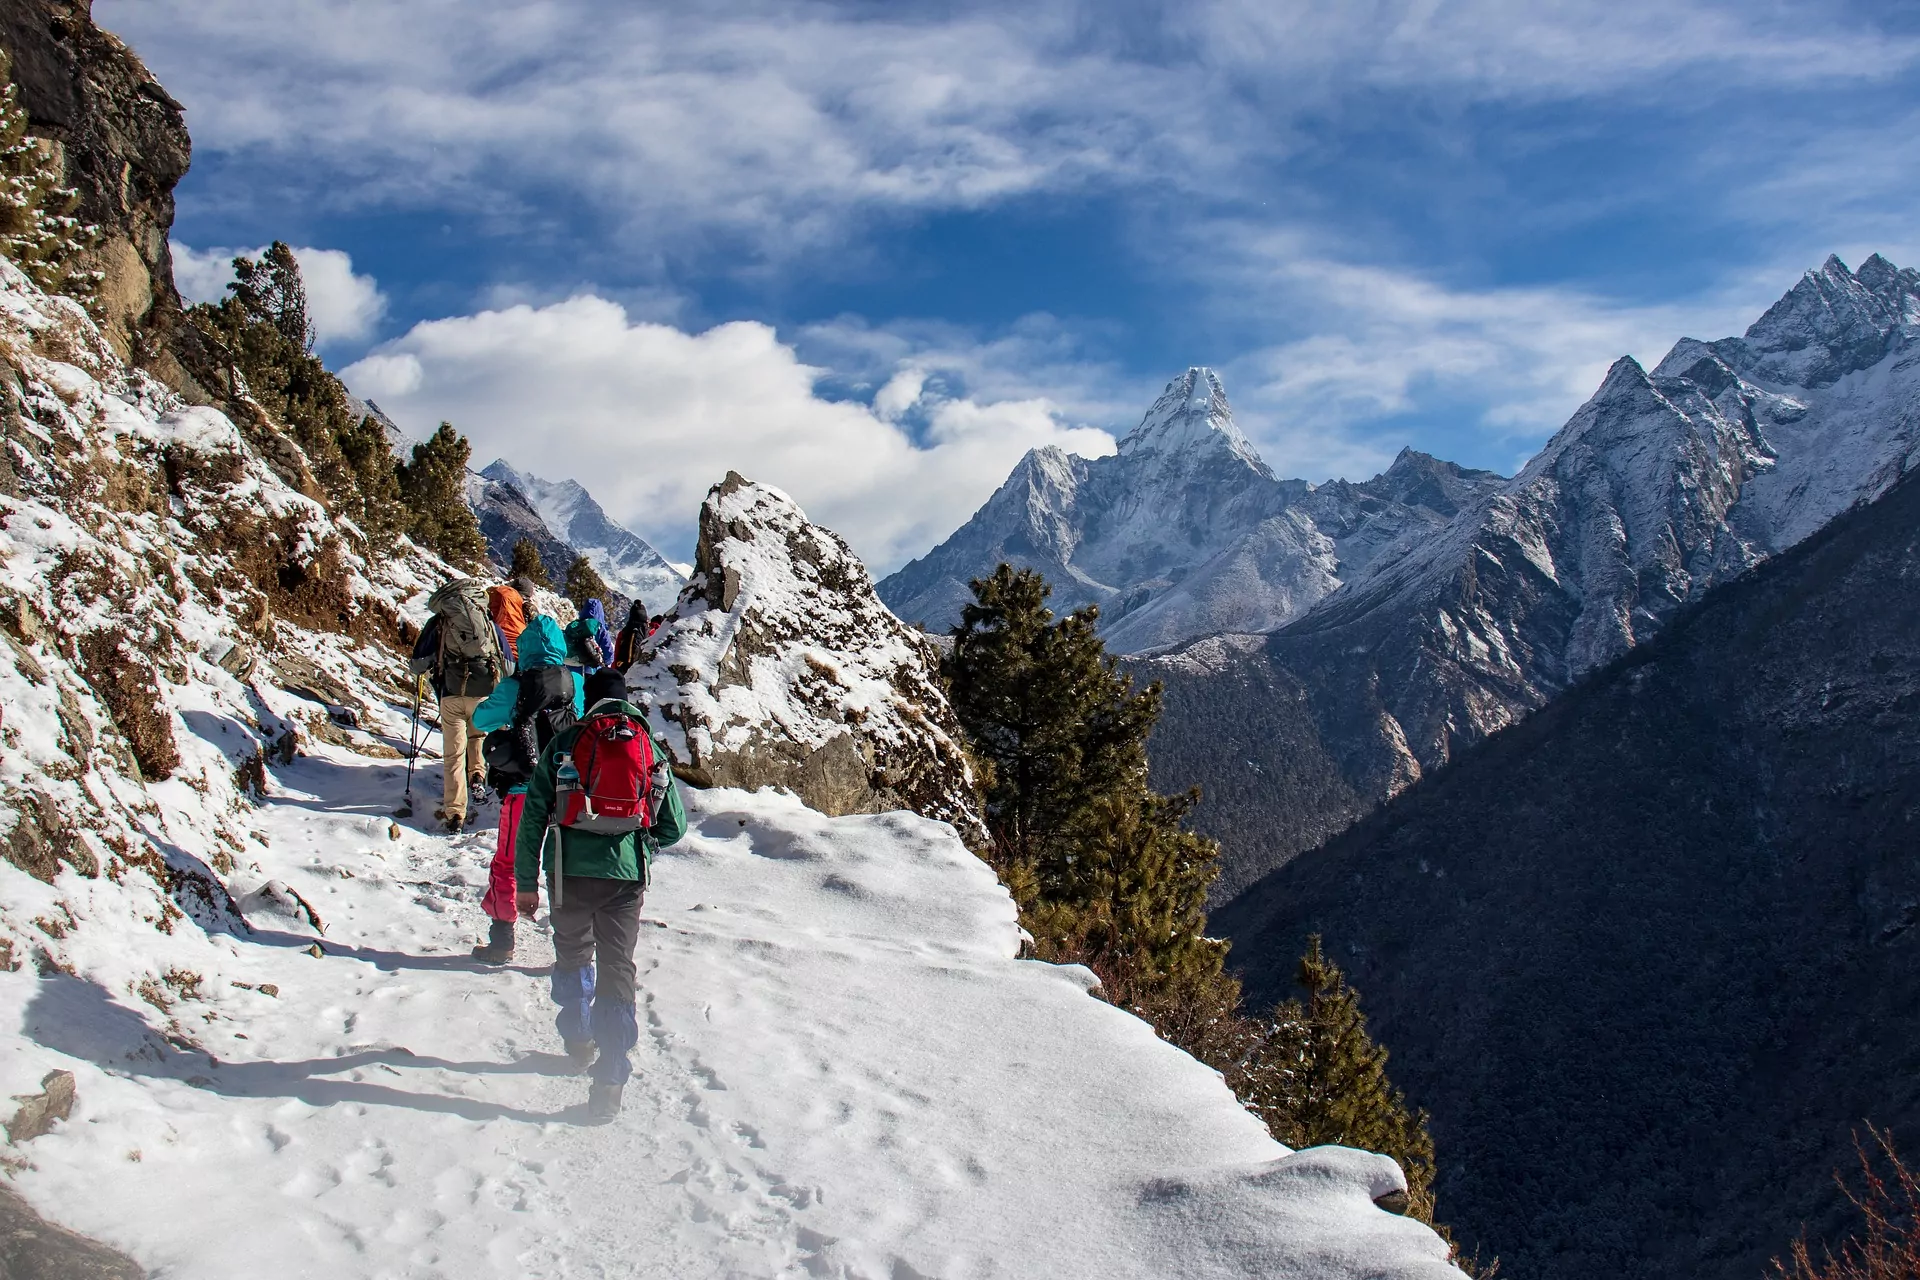 Annapurna trek